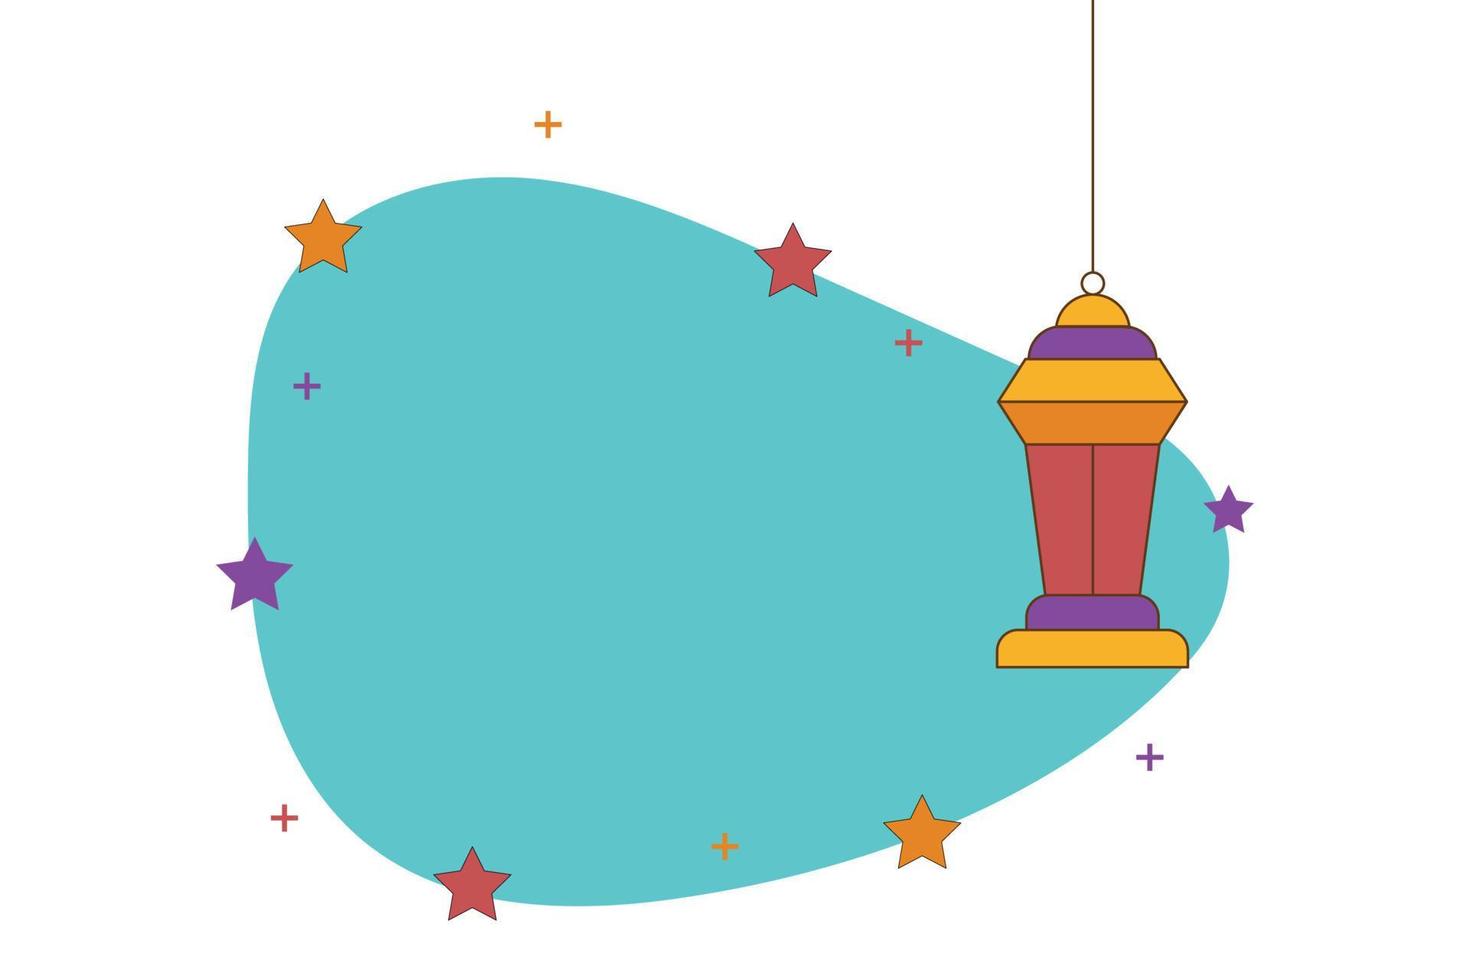 ramadan kareem salutation design islamique avec lanterne, étoile et lune. illustration de l'art vectoriel